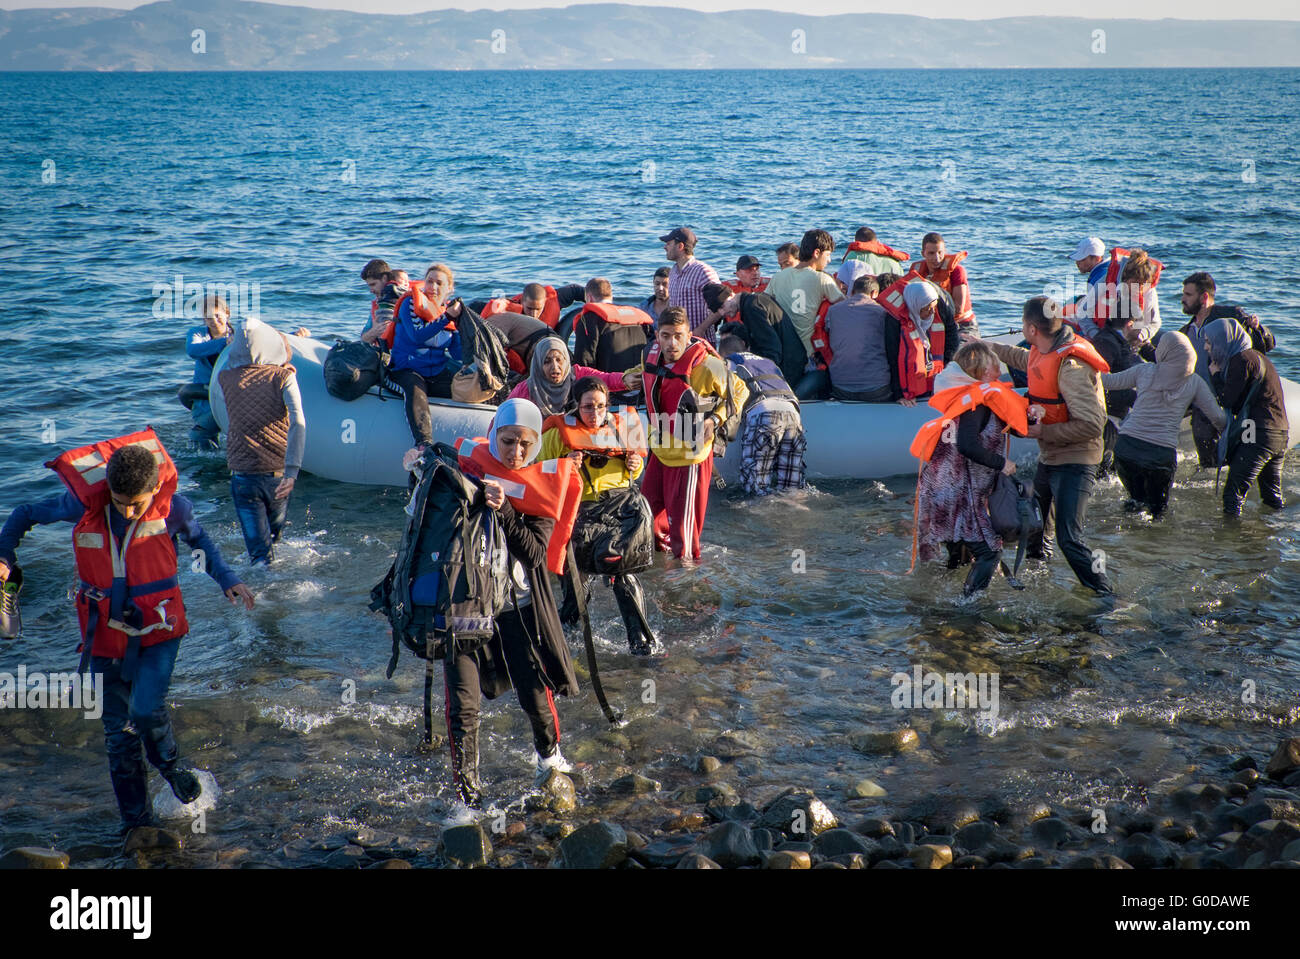 Los refugiados de Siria, Afganistán, Iraq y Somalia cruz desde Turquía a Grecia en balsas que llegan a la isla griega de Lesbos Foto de stock